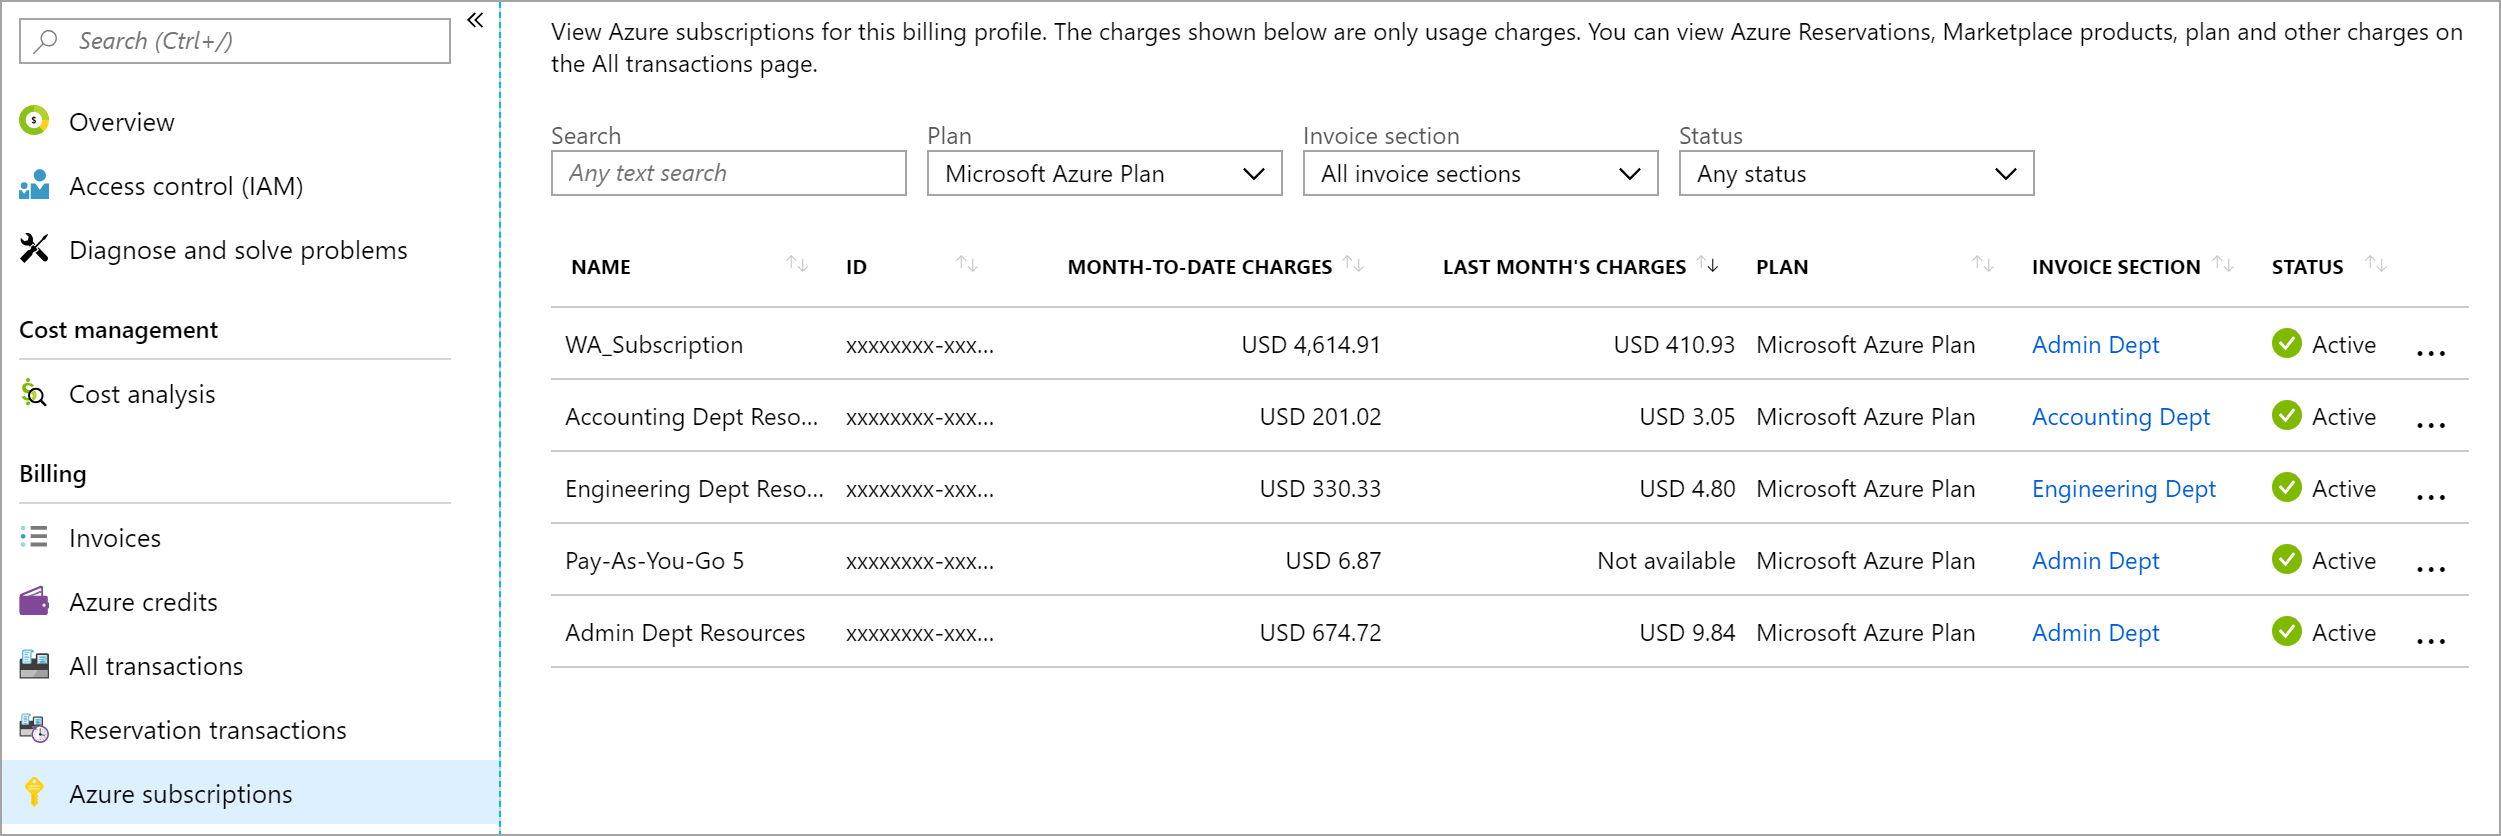 屏幕截图显示带有本月至今费用和上个月的费用的订阅。